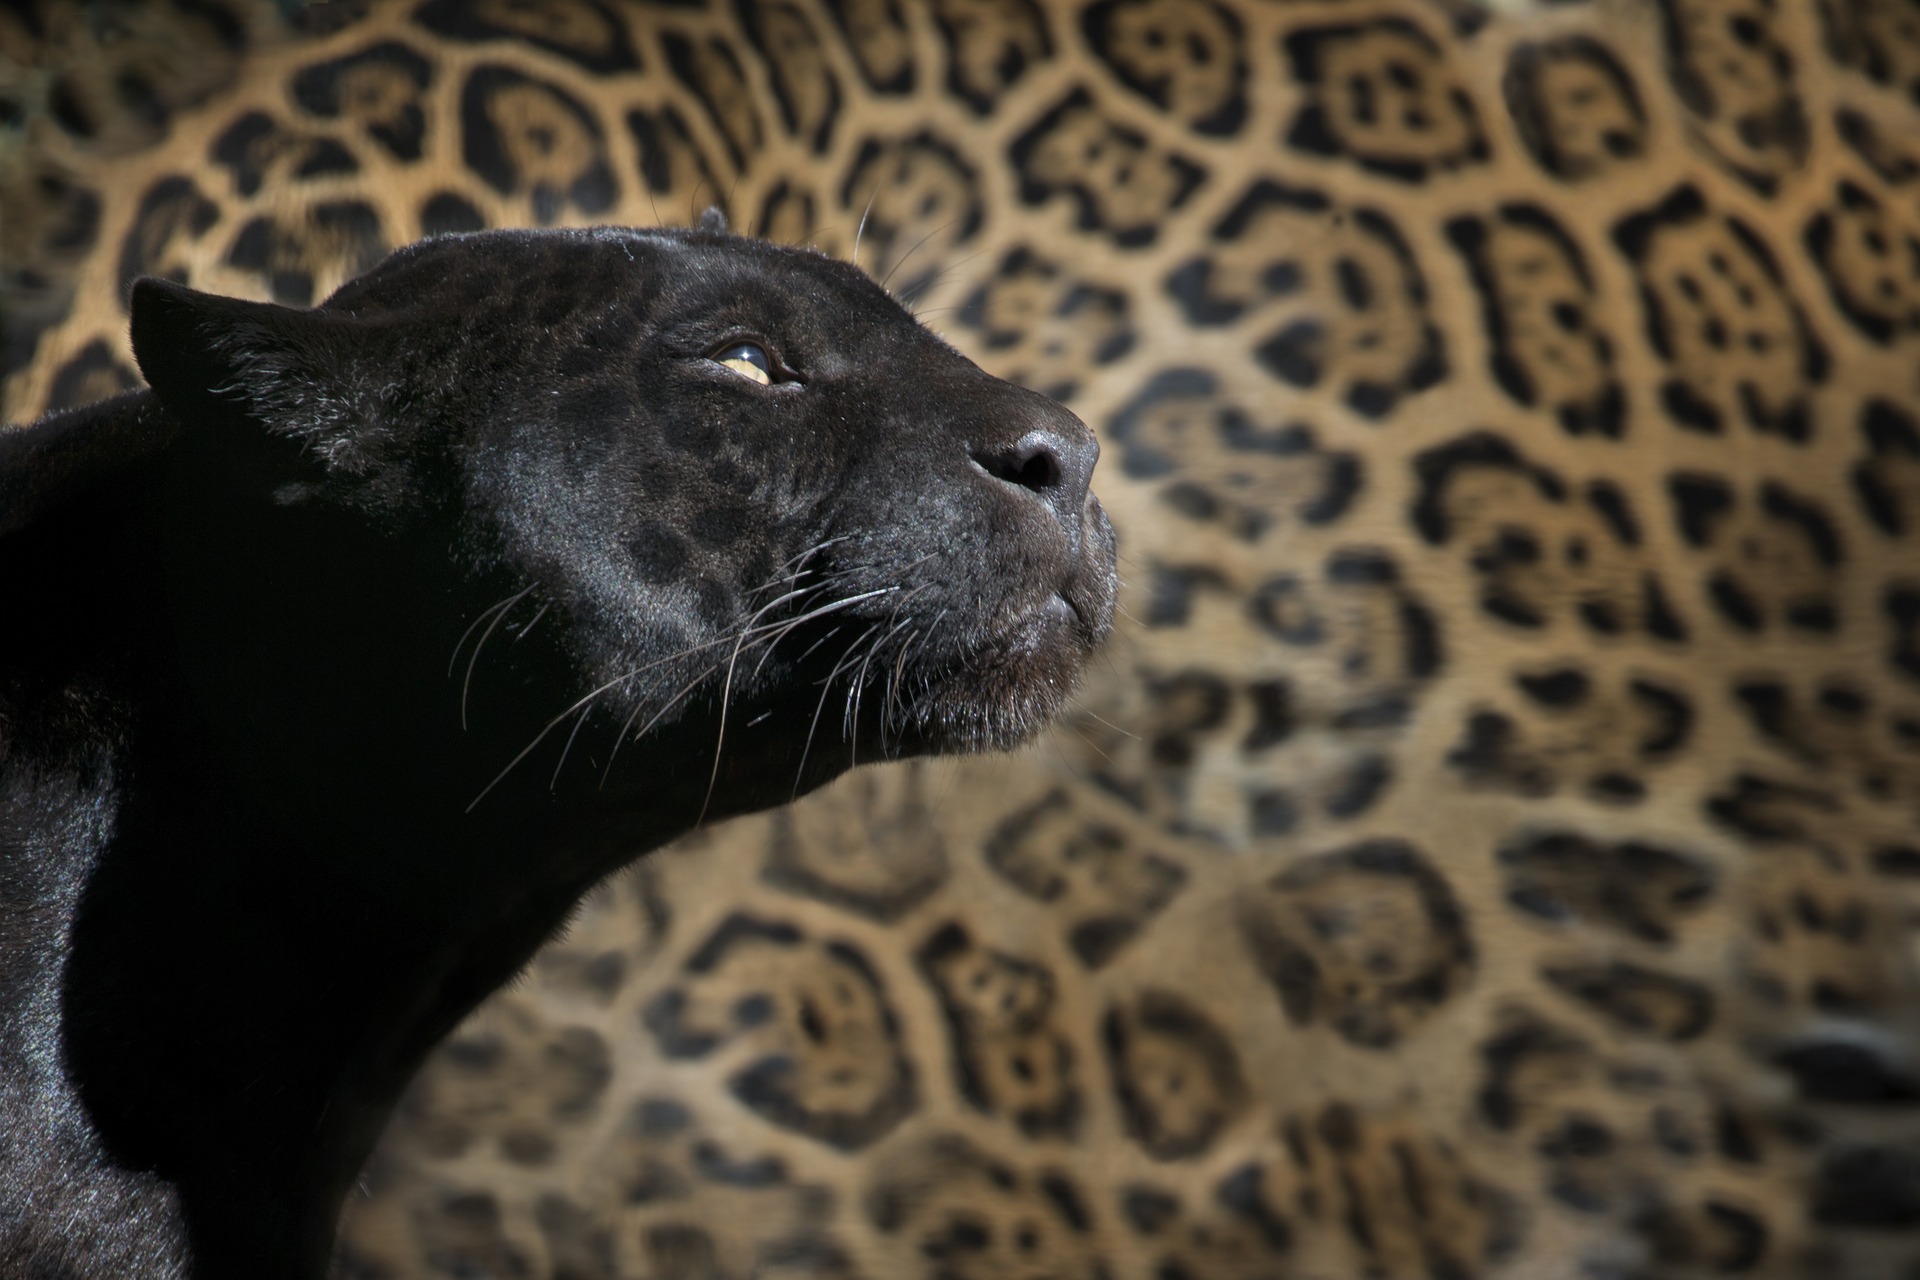 Différence entre panthère et léopard